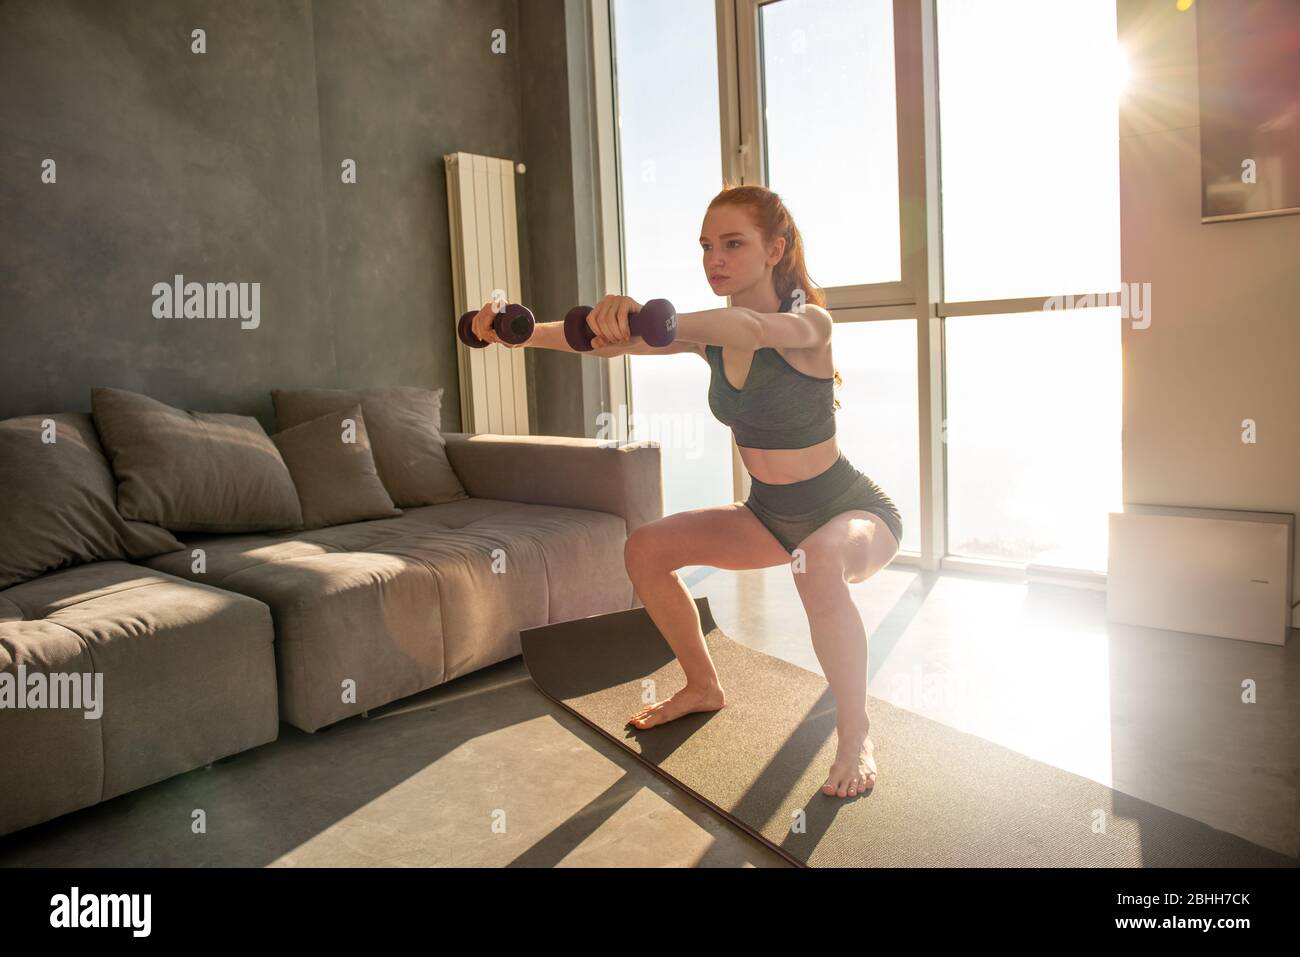 La jeune fille fait des exercices de gym pendant le lever du soleil. Elle est à la maison en raison de la quarantaine de coronavirus codiv-19 Banque D'Images